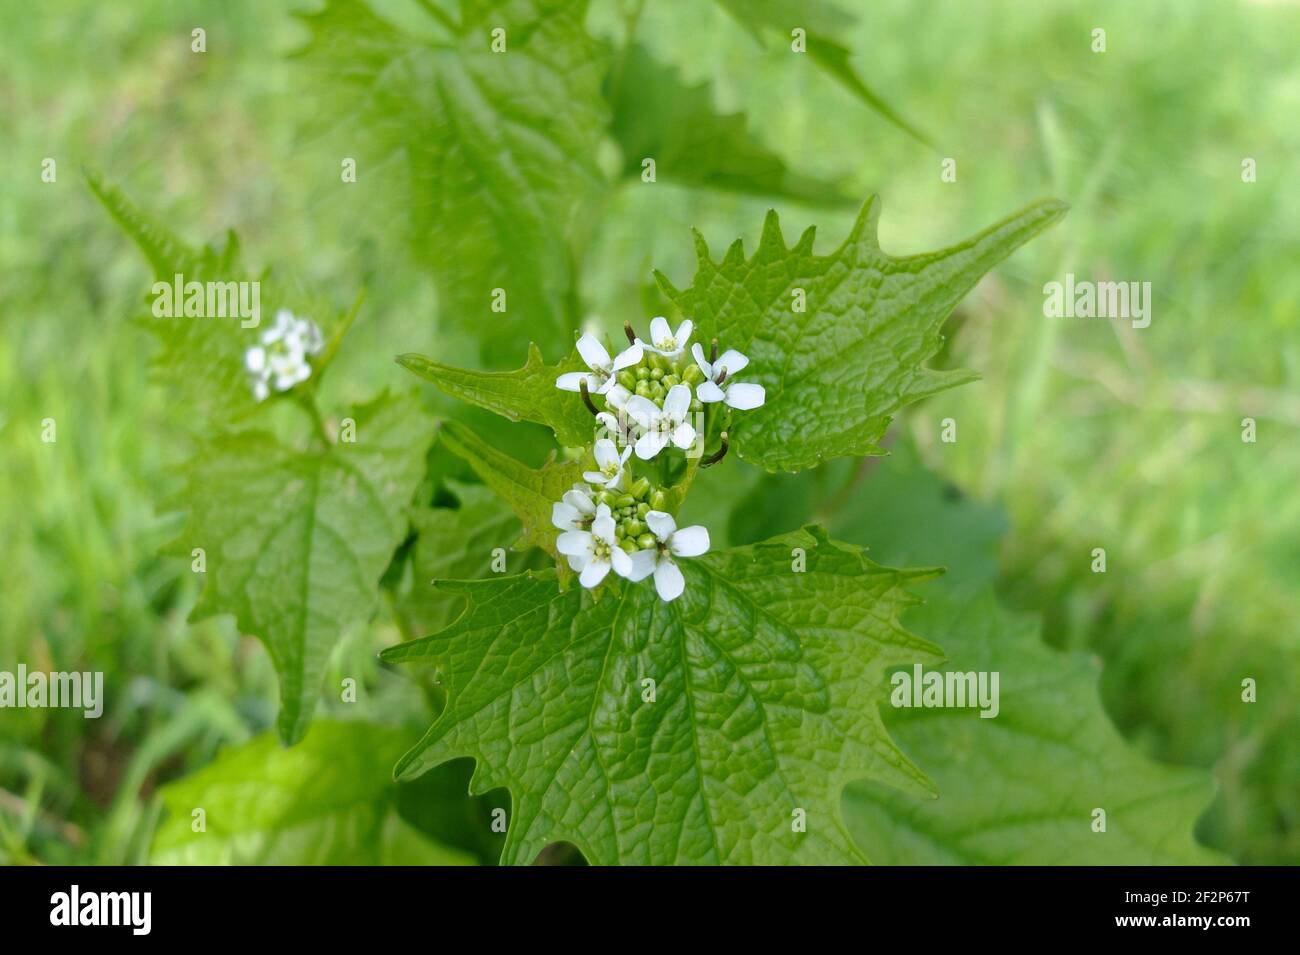 Mostaza de ajo (Alliaria officinalis) con flores blancas Foto de stock